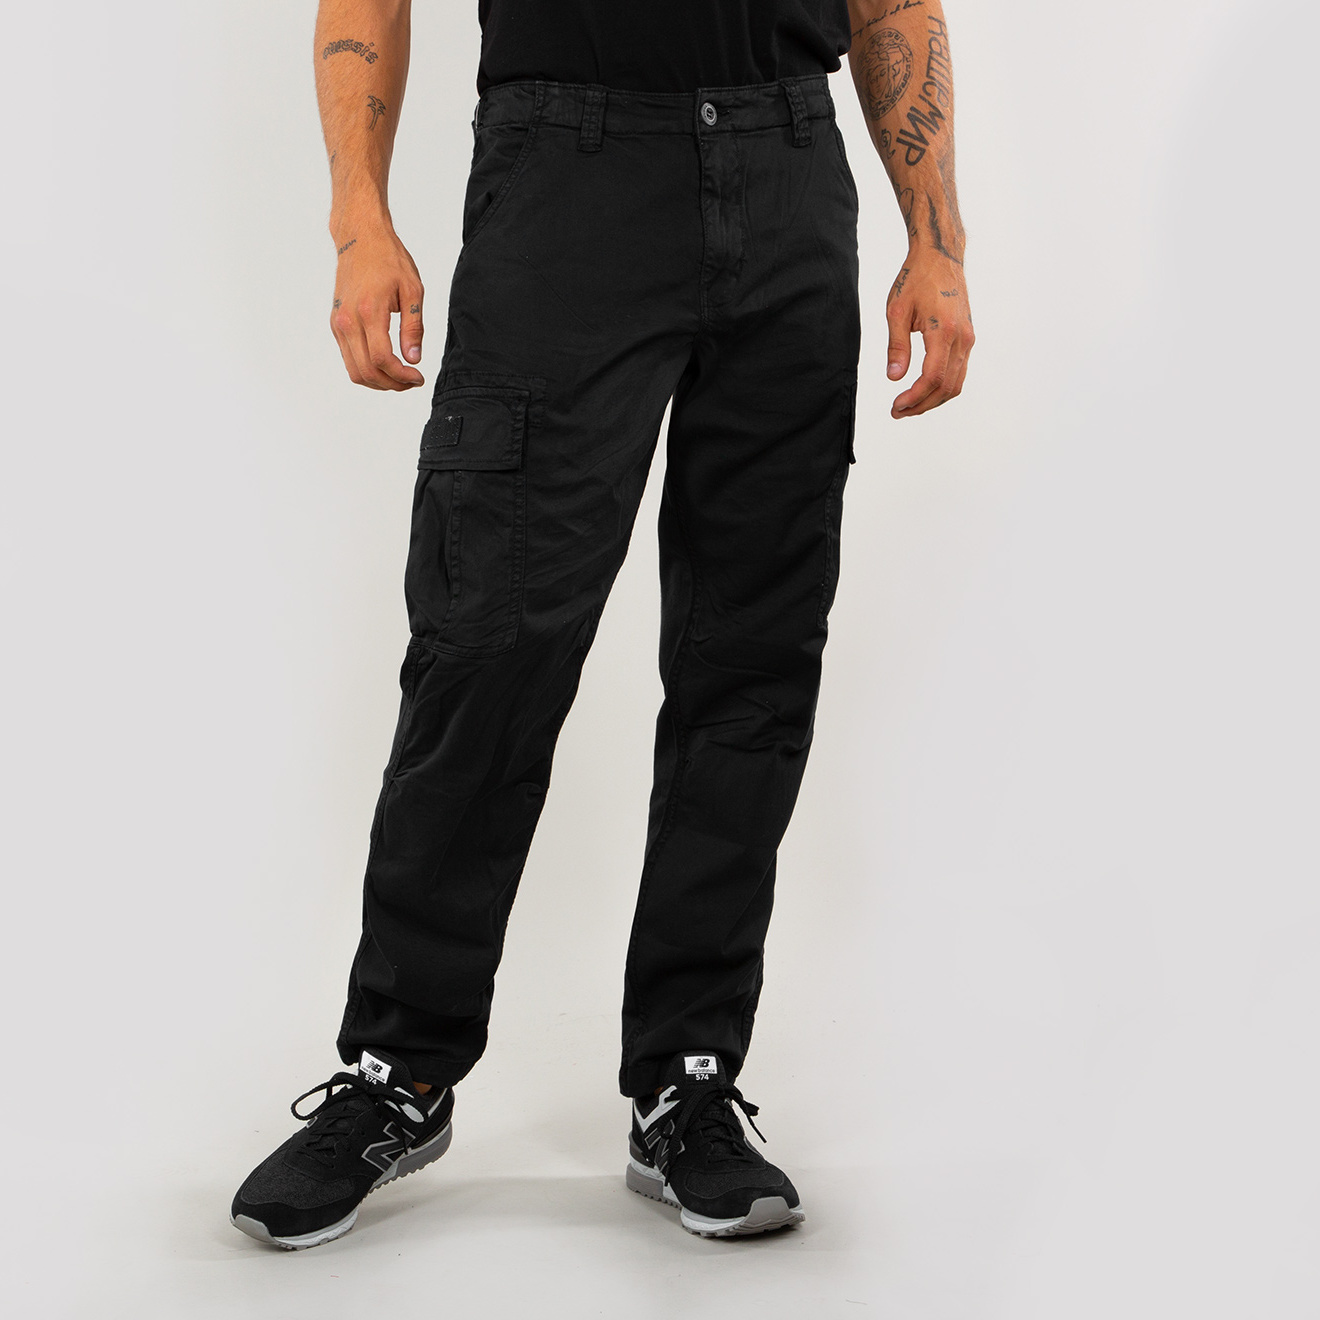 kalhoty SQUAD Pant black